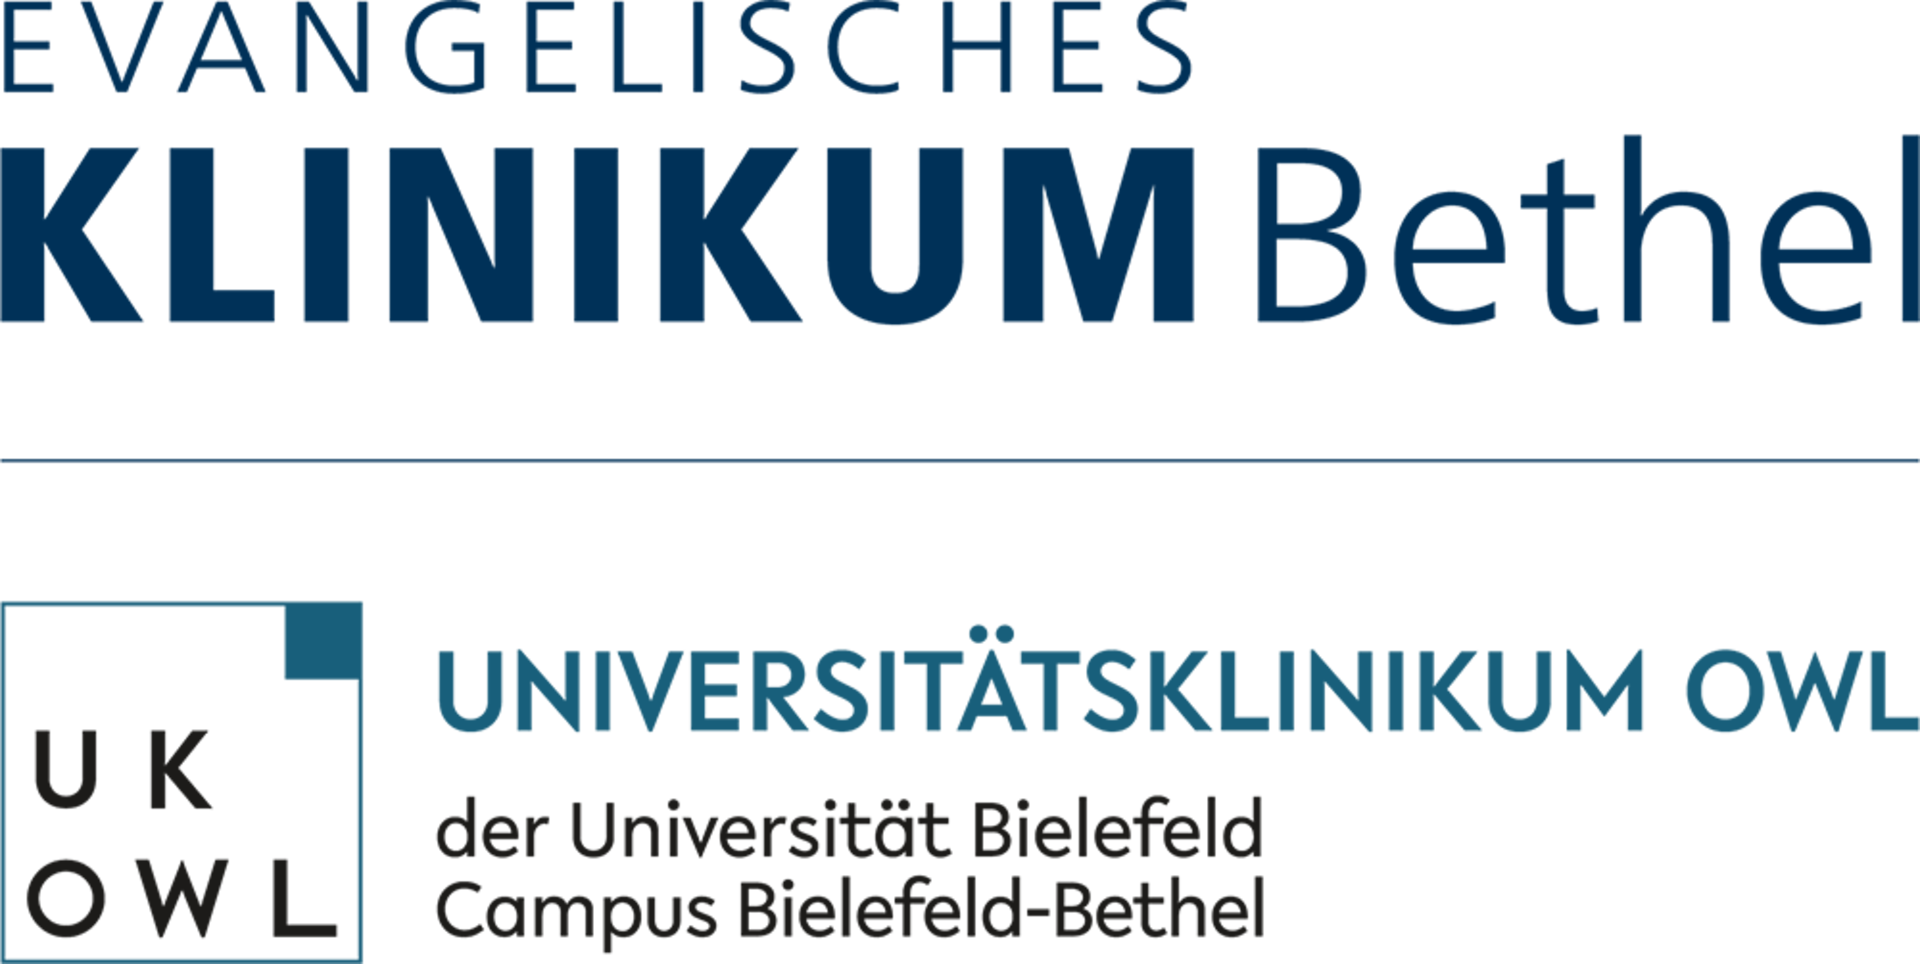 Logo | Evangelisches Klinikum Bethel und Universitätsklinikum OWL 